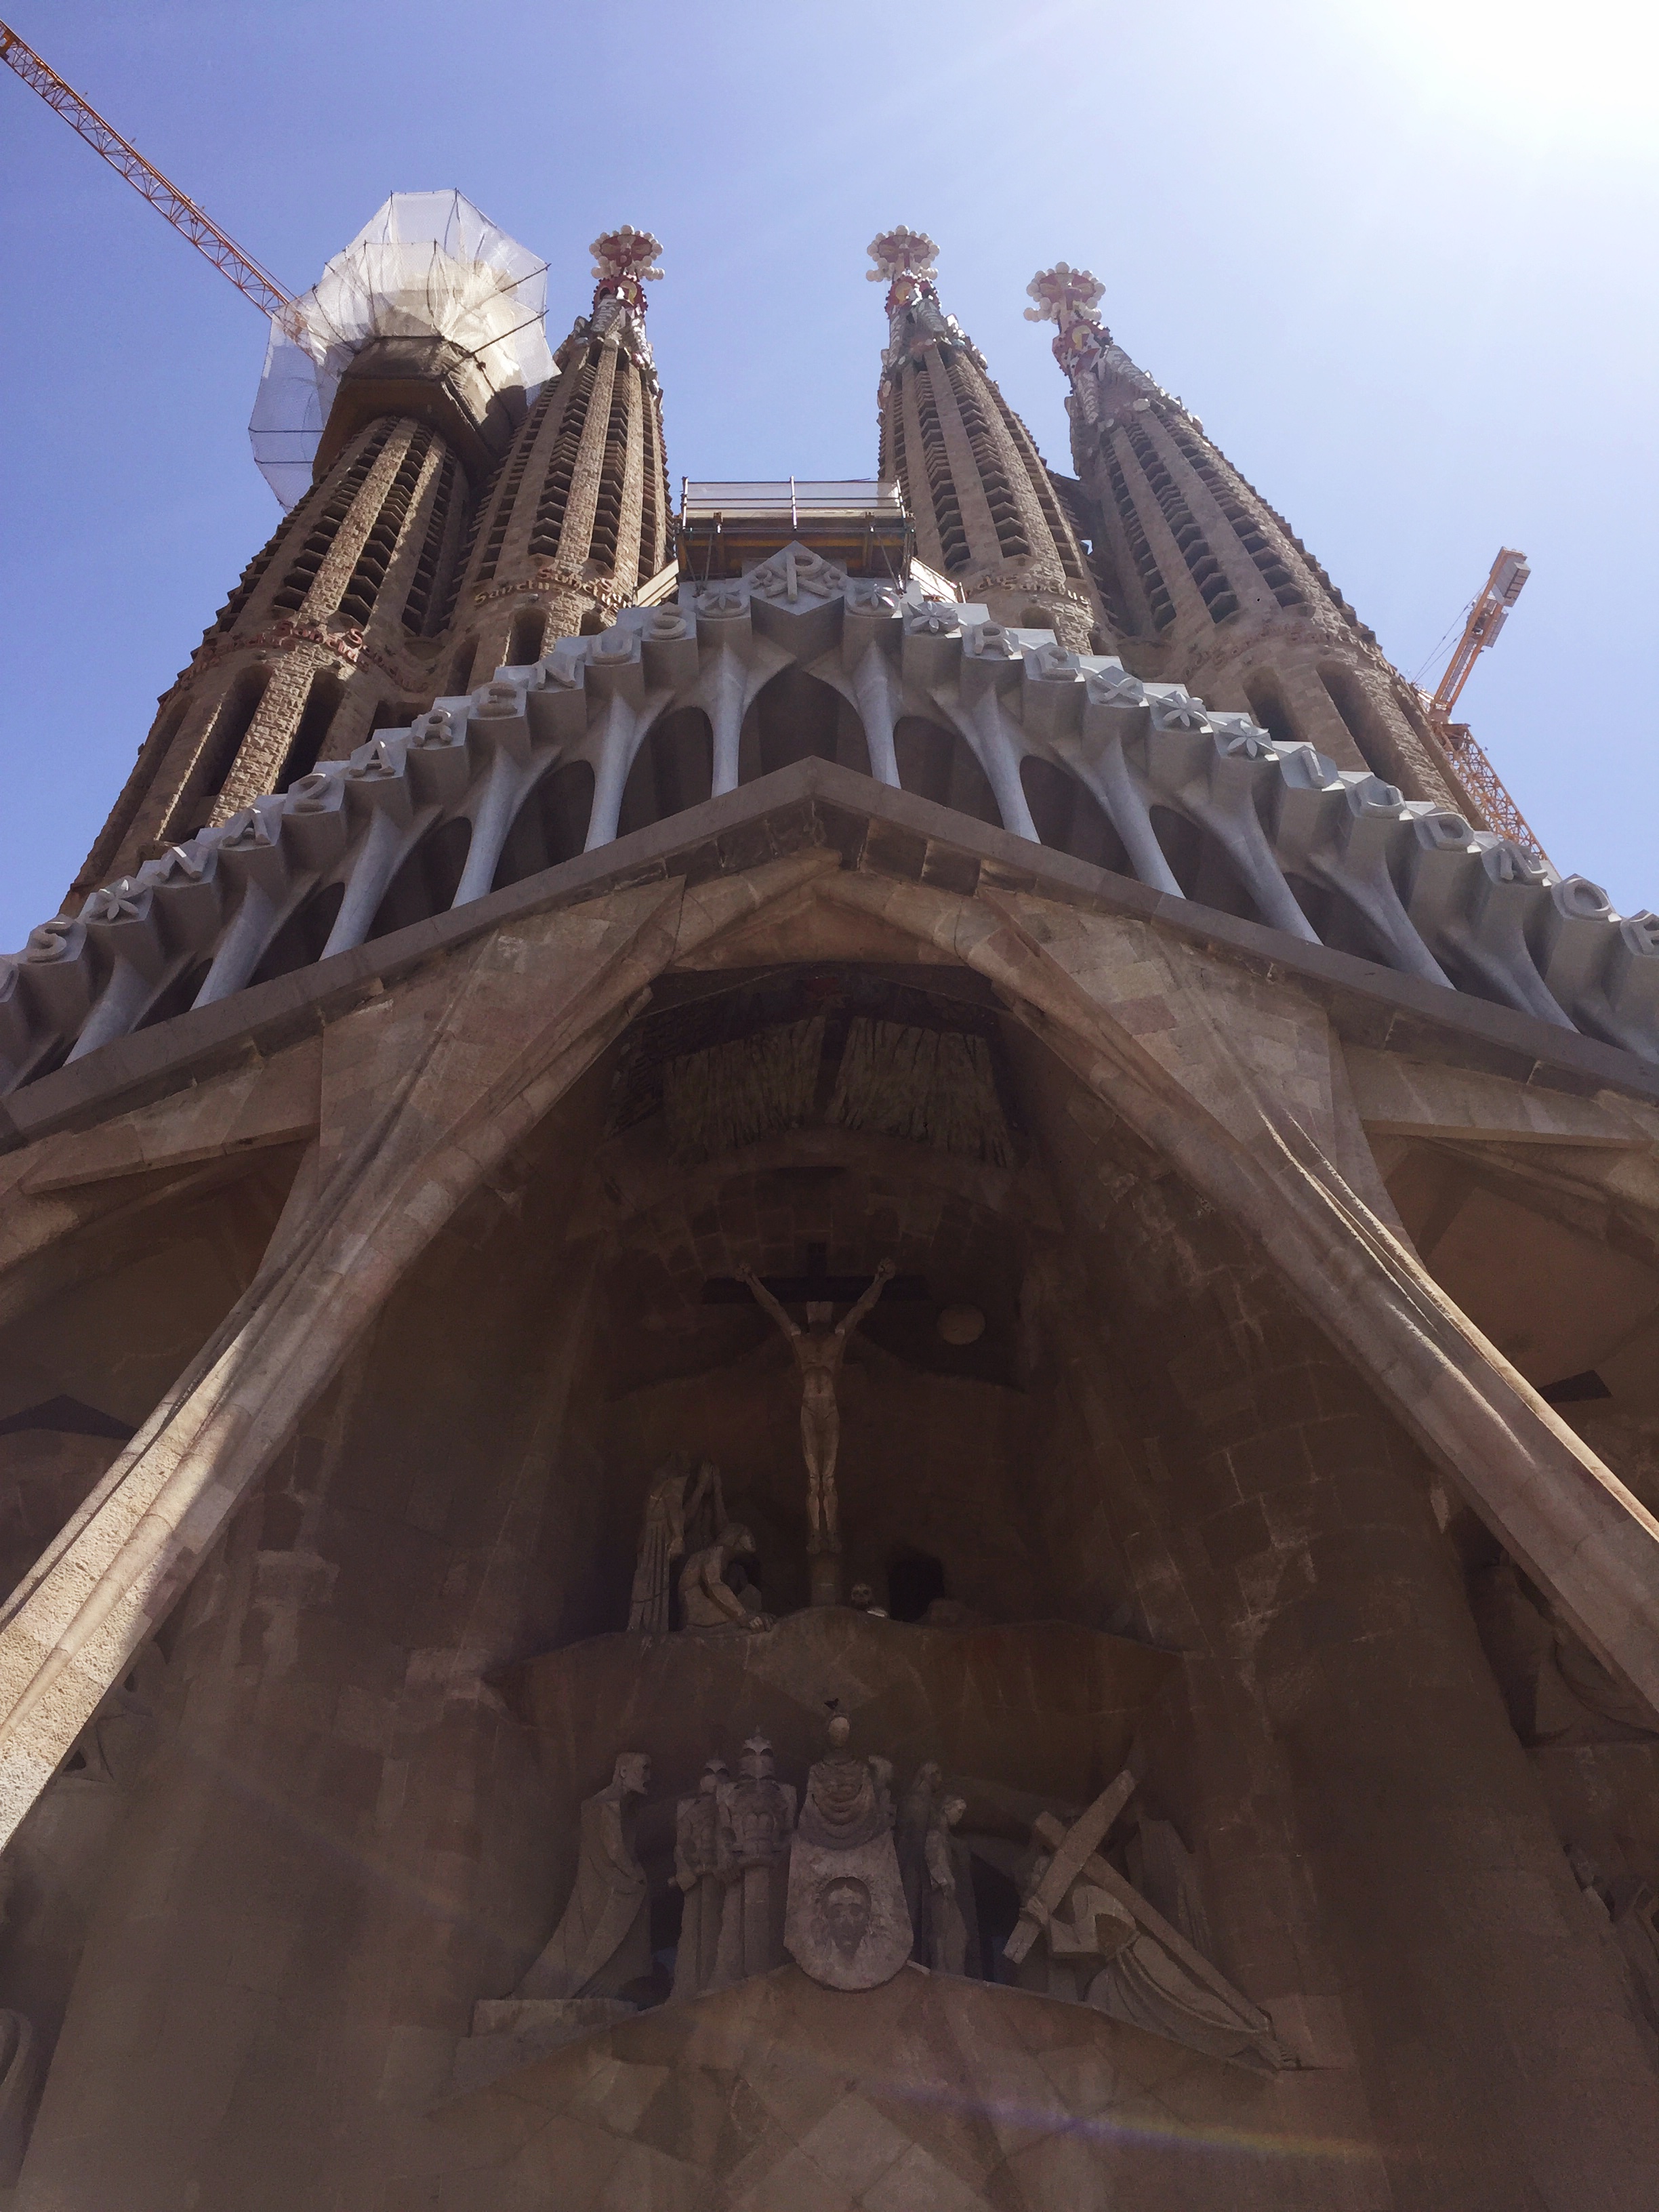 Entrance to La Sagrada Familia